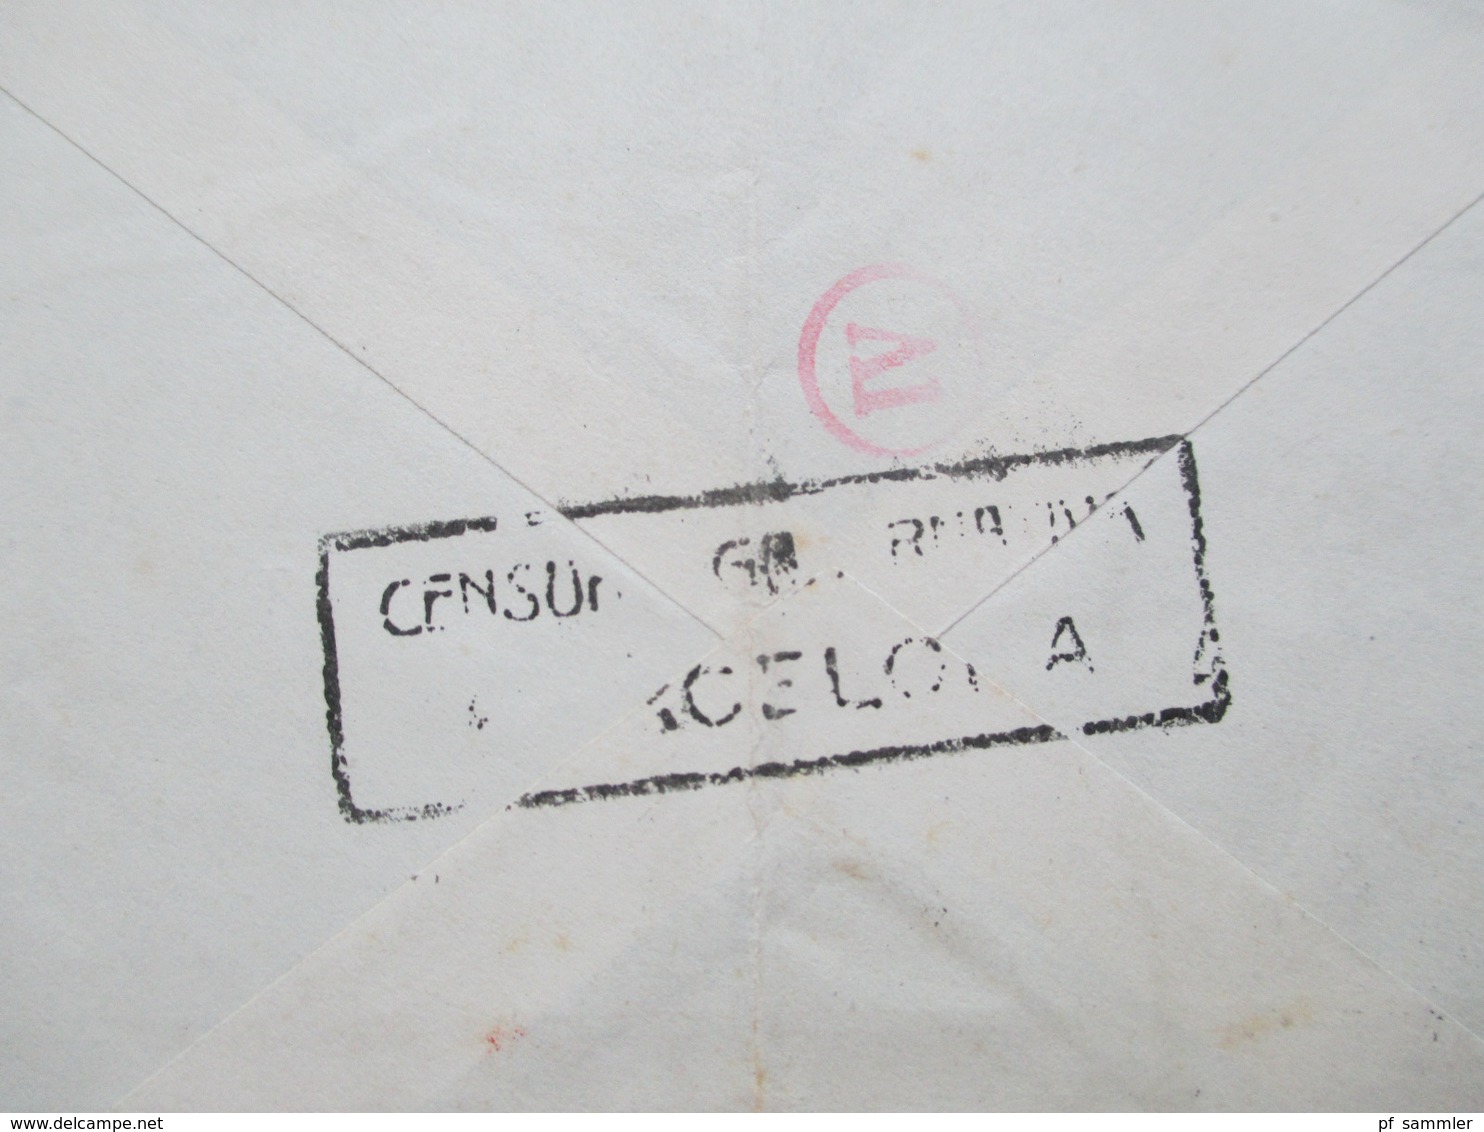 Spanien 1943 Luftpostbrief Barcelona - Berlin Mit Spanischer Zensur Und OKW Zensur Censura Barcelona Mehrfachzensur - Covers & Documents